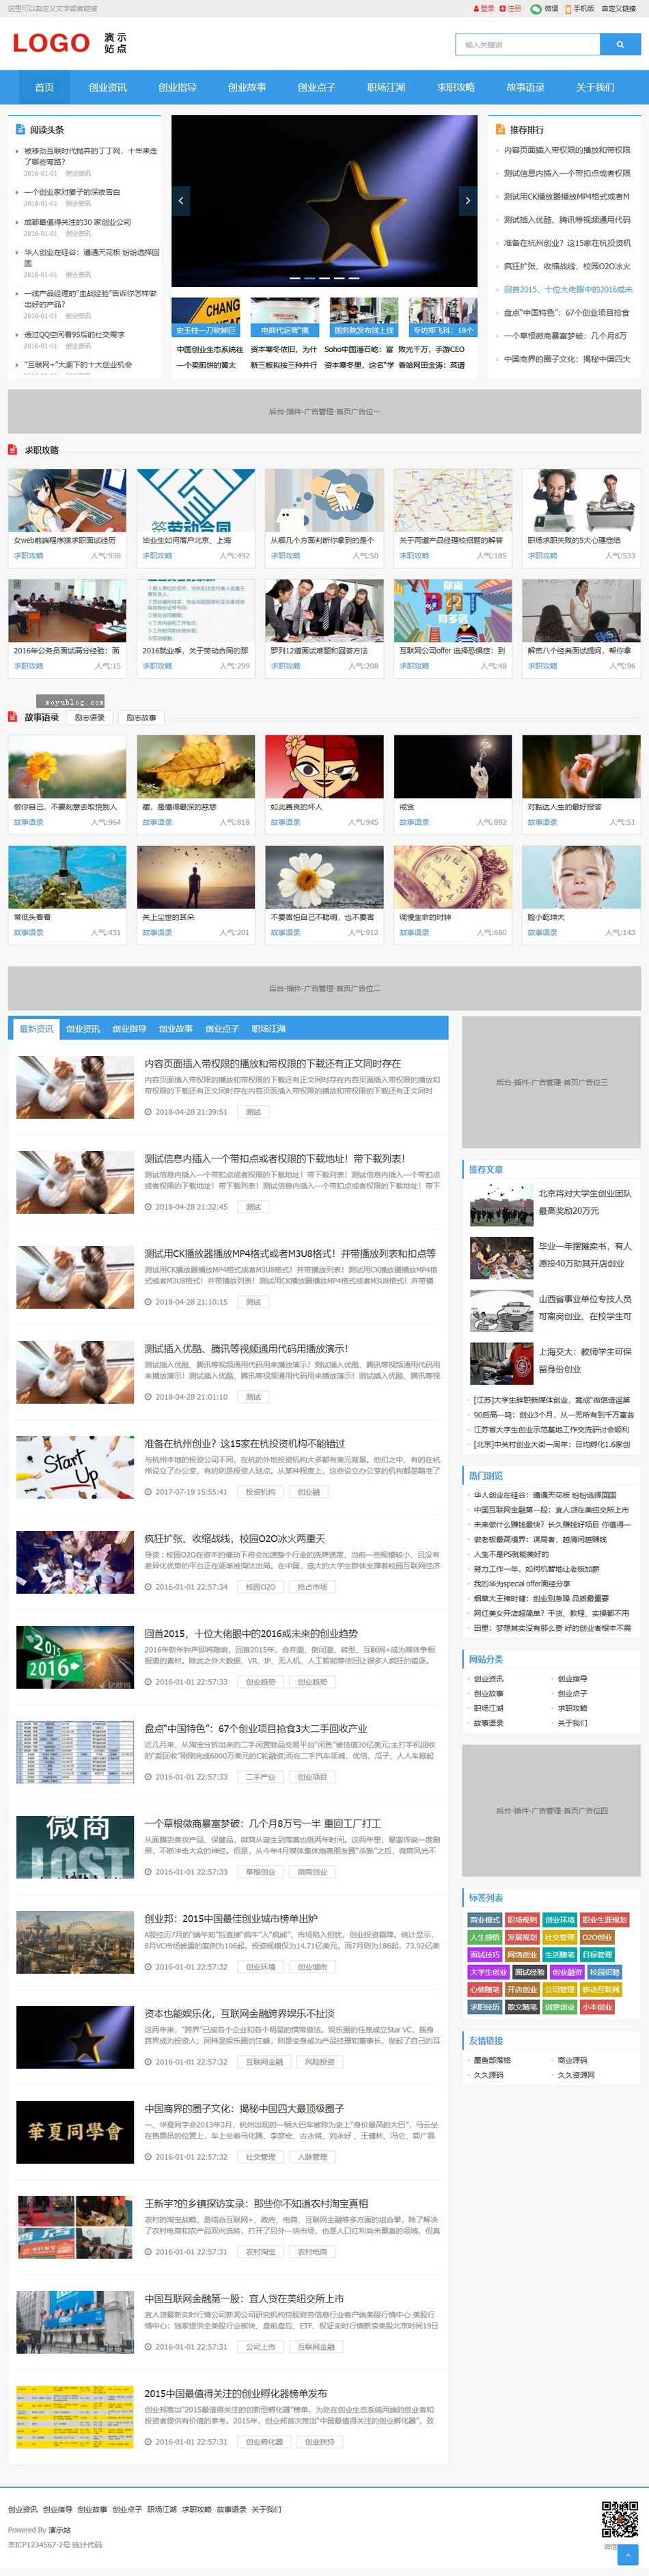 视频图片新闻资讯软件下载博客帝国CMS自适应响应式HTML5整站模板